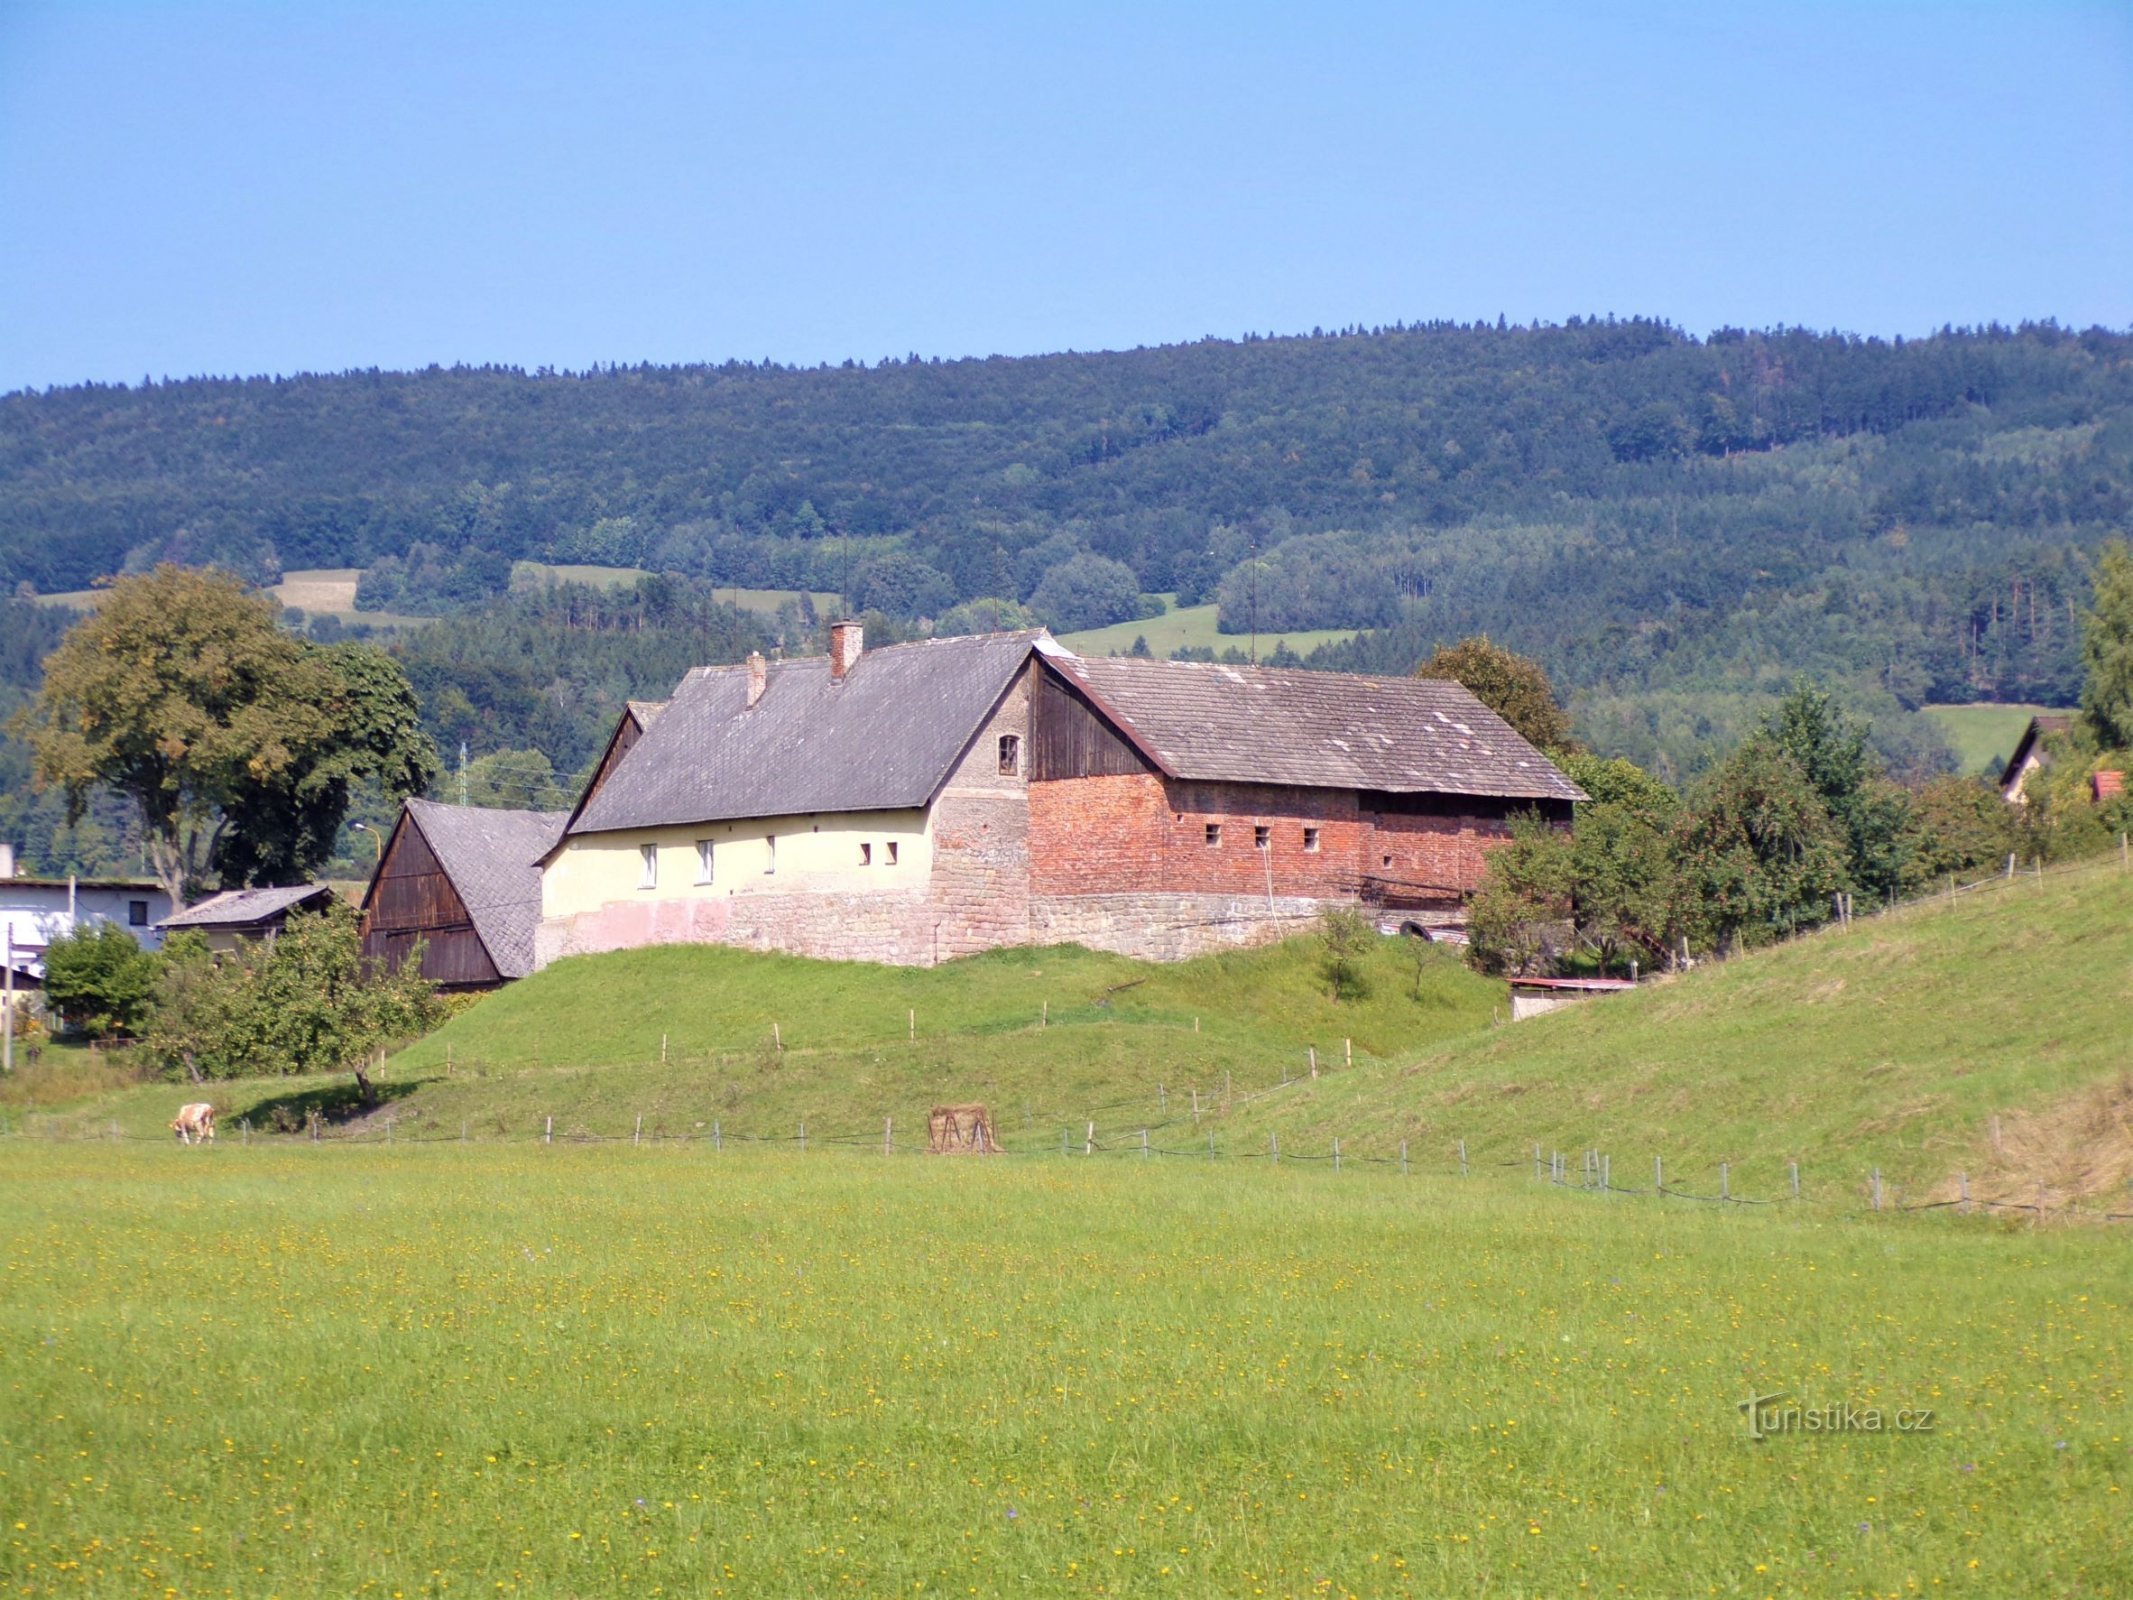 Estate No. 242 on the site of a former fortress (Velké Svatoňovice, 6.9.2021/XNUMX/XNUMX)